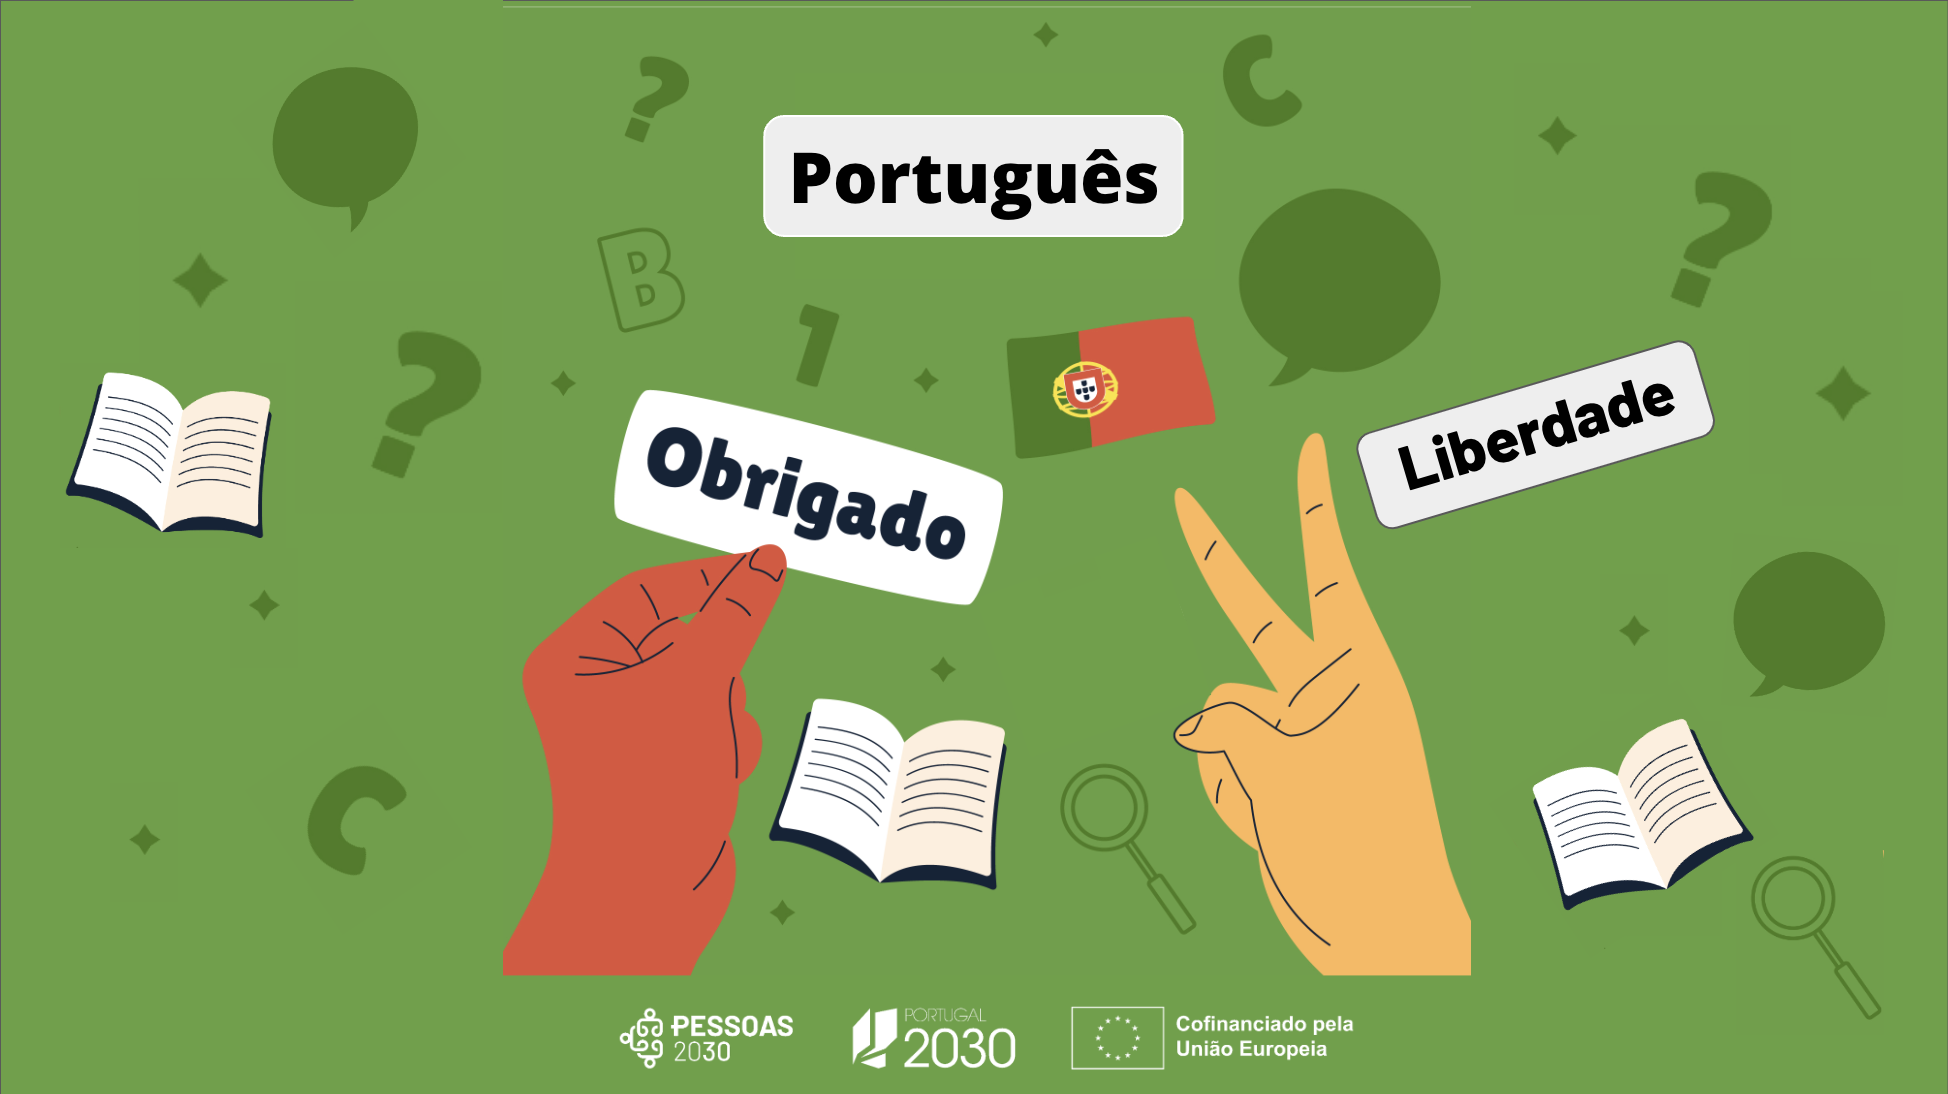 Português Língua Estrangeira